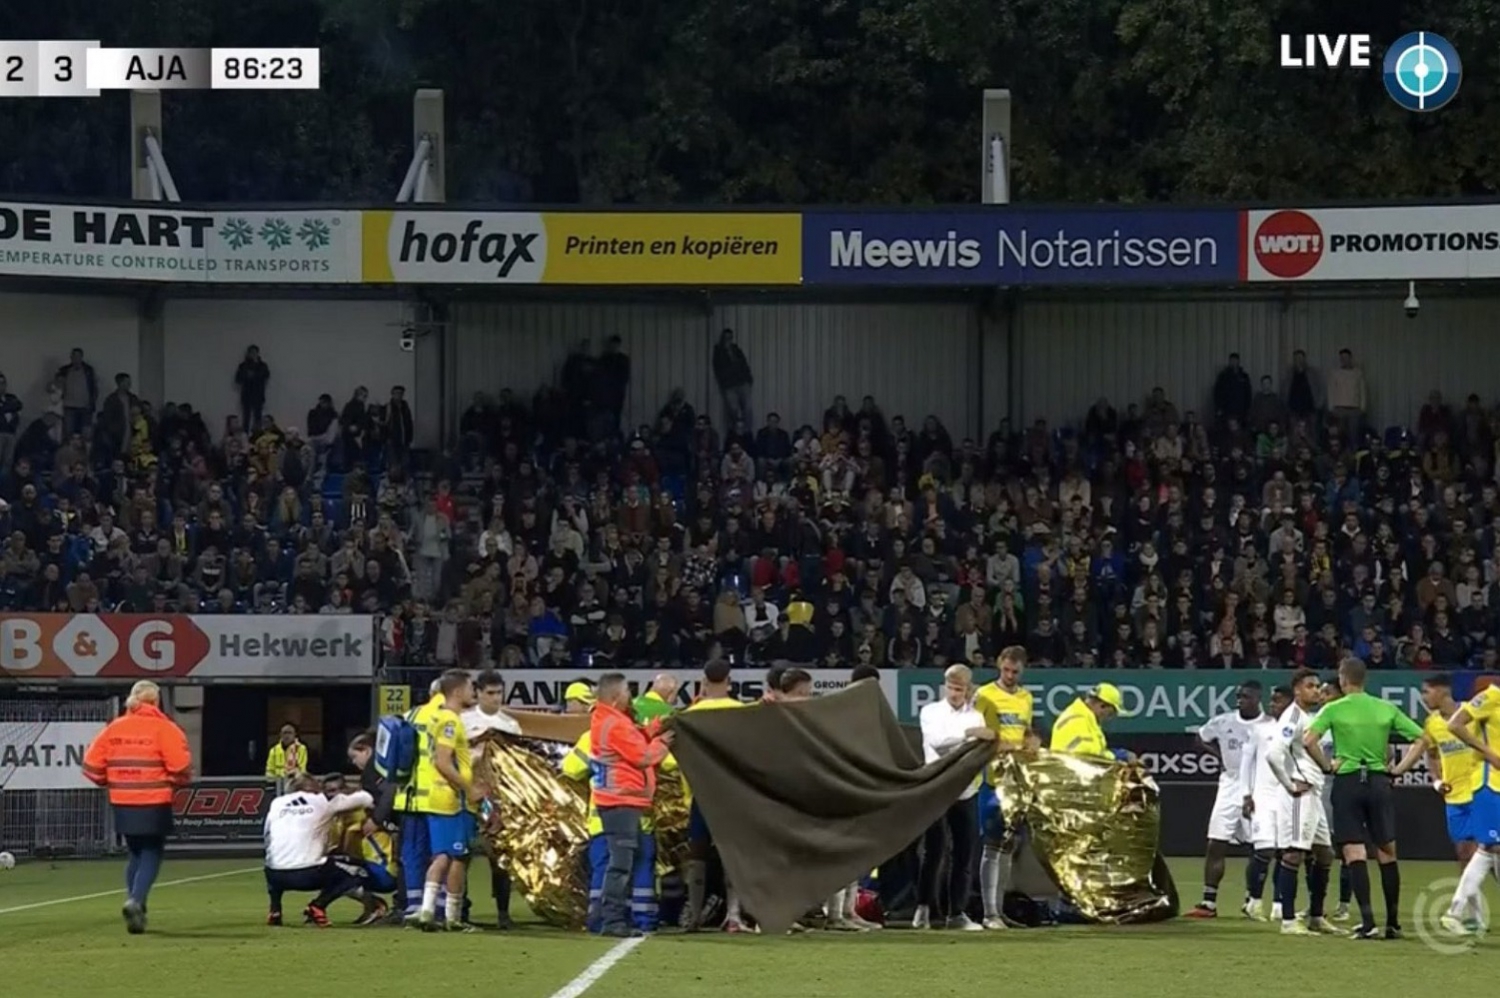 Meciul dintre Ajax și RKC Waalwijk s-a încheiat prematur.  O accidentare terifiantă